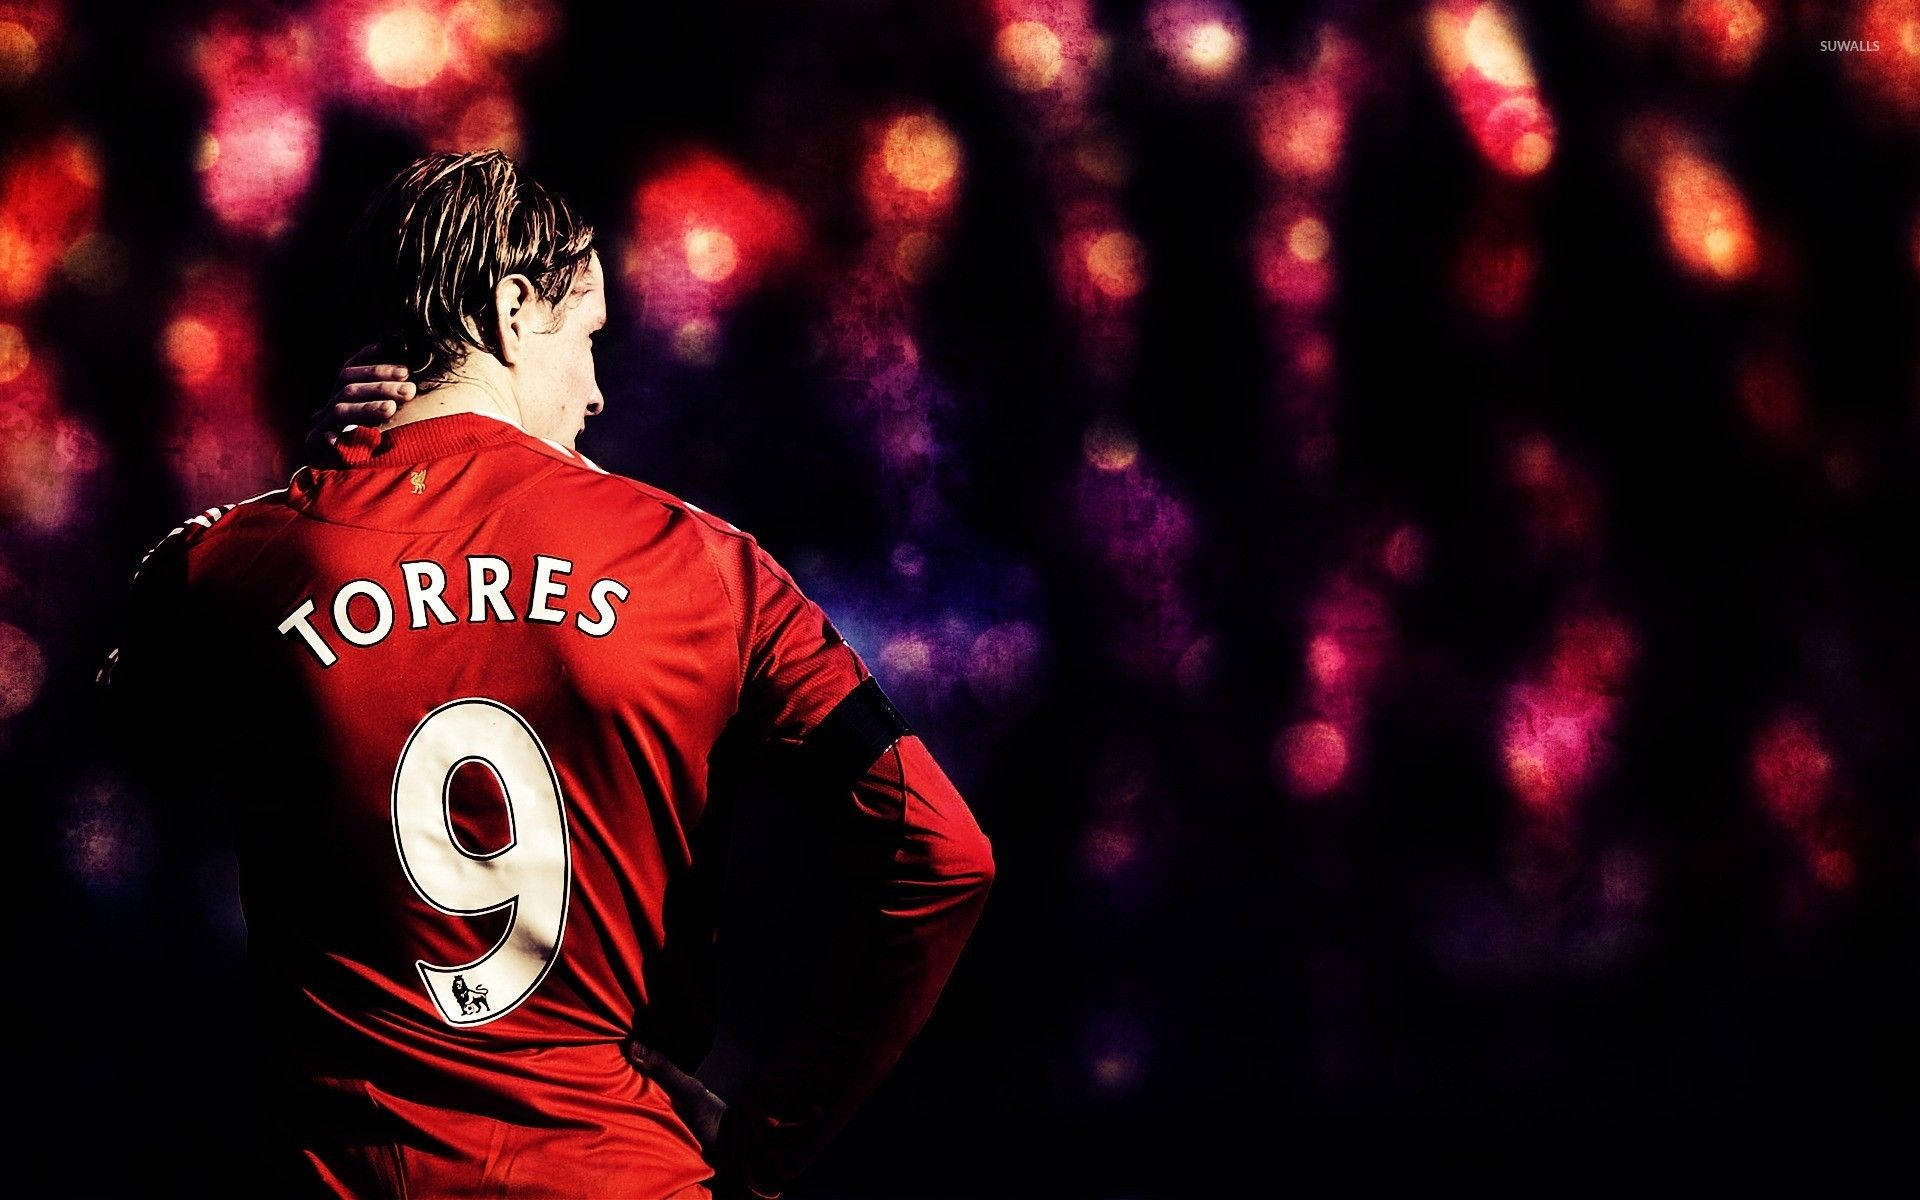 Fernando Torres Player Number 9 Background